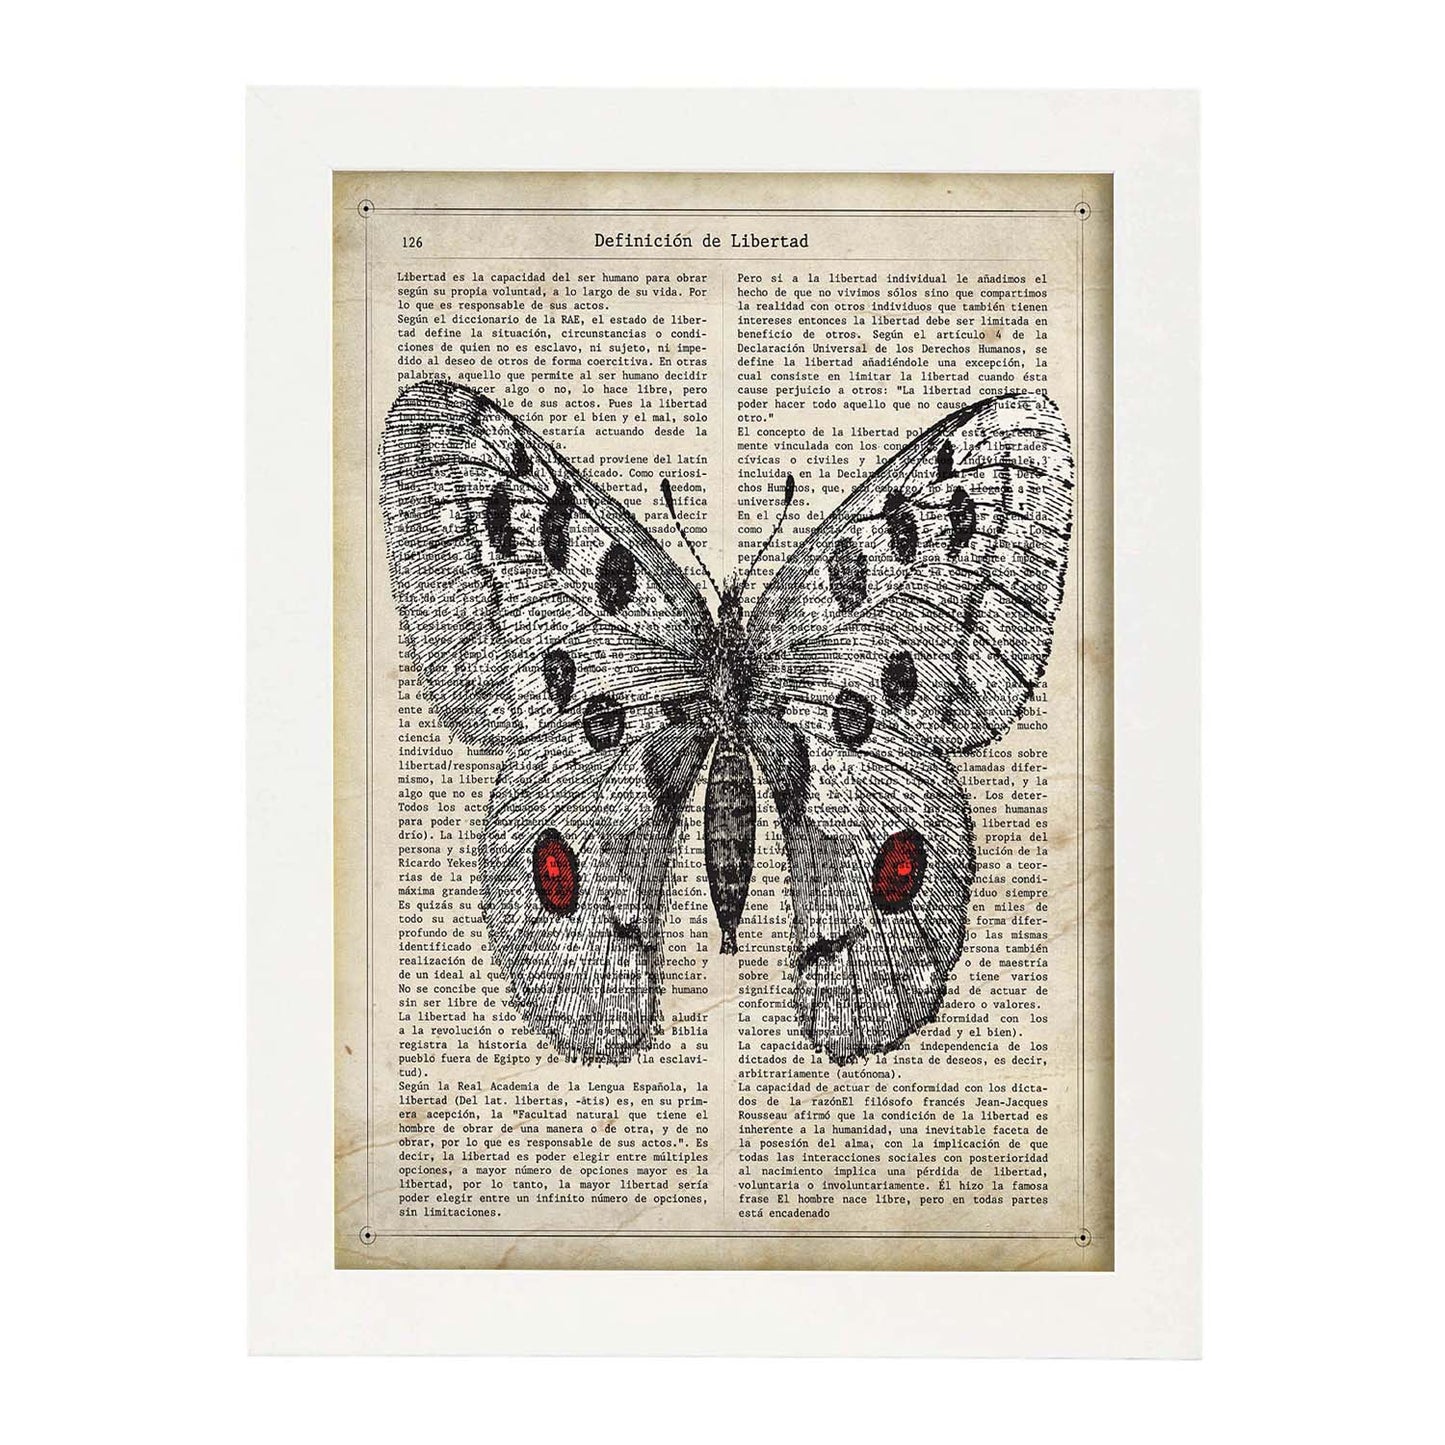 Poster de Mariposa Apollo. Láminas de mariposas. Decoración de mariposas y polillas.-Artwork-Nacnic-Nacnic Estudio SL